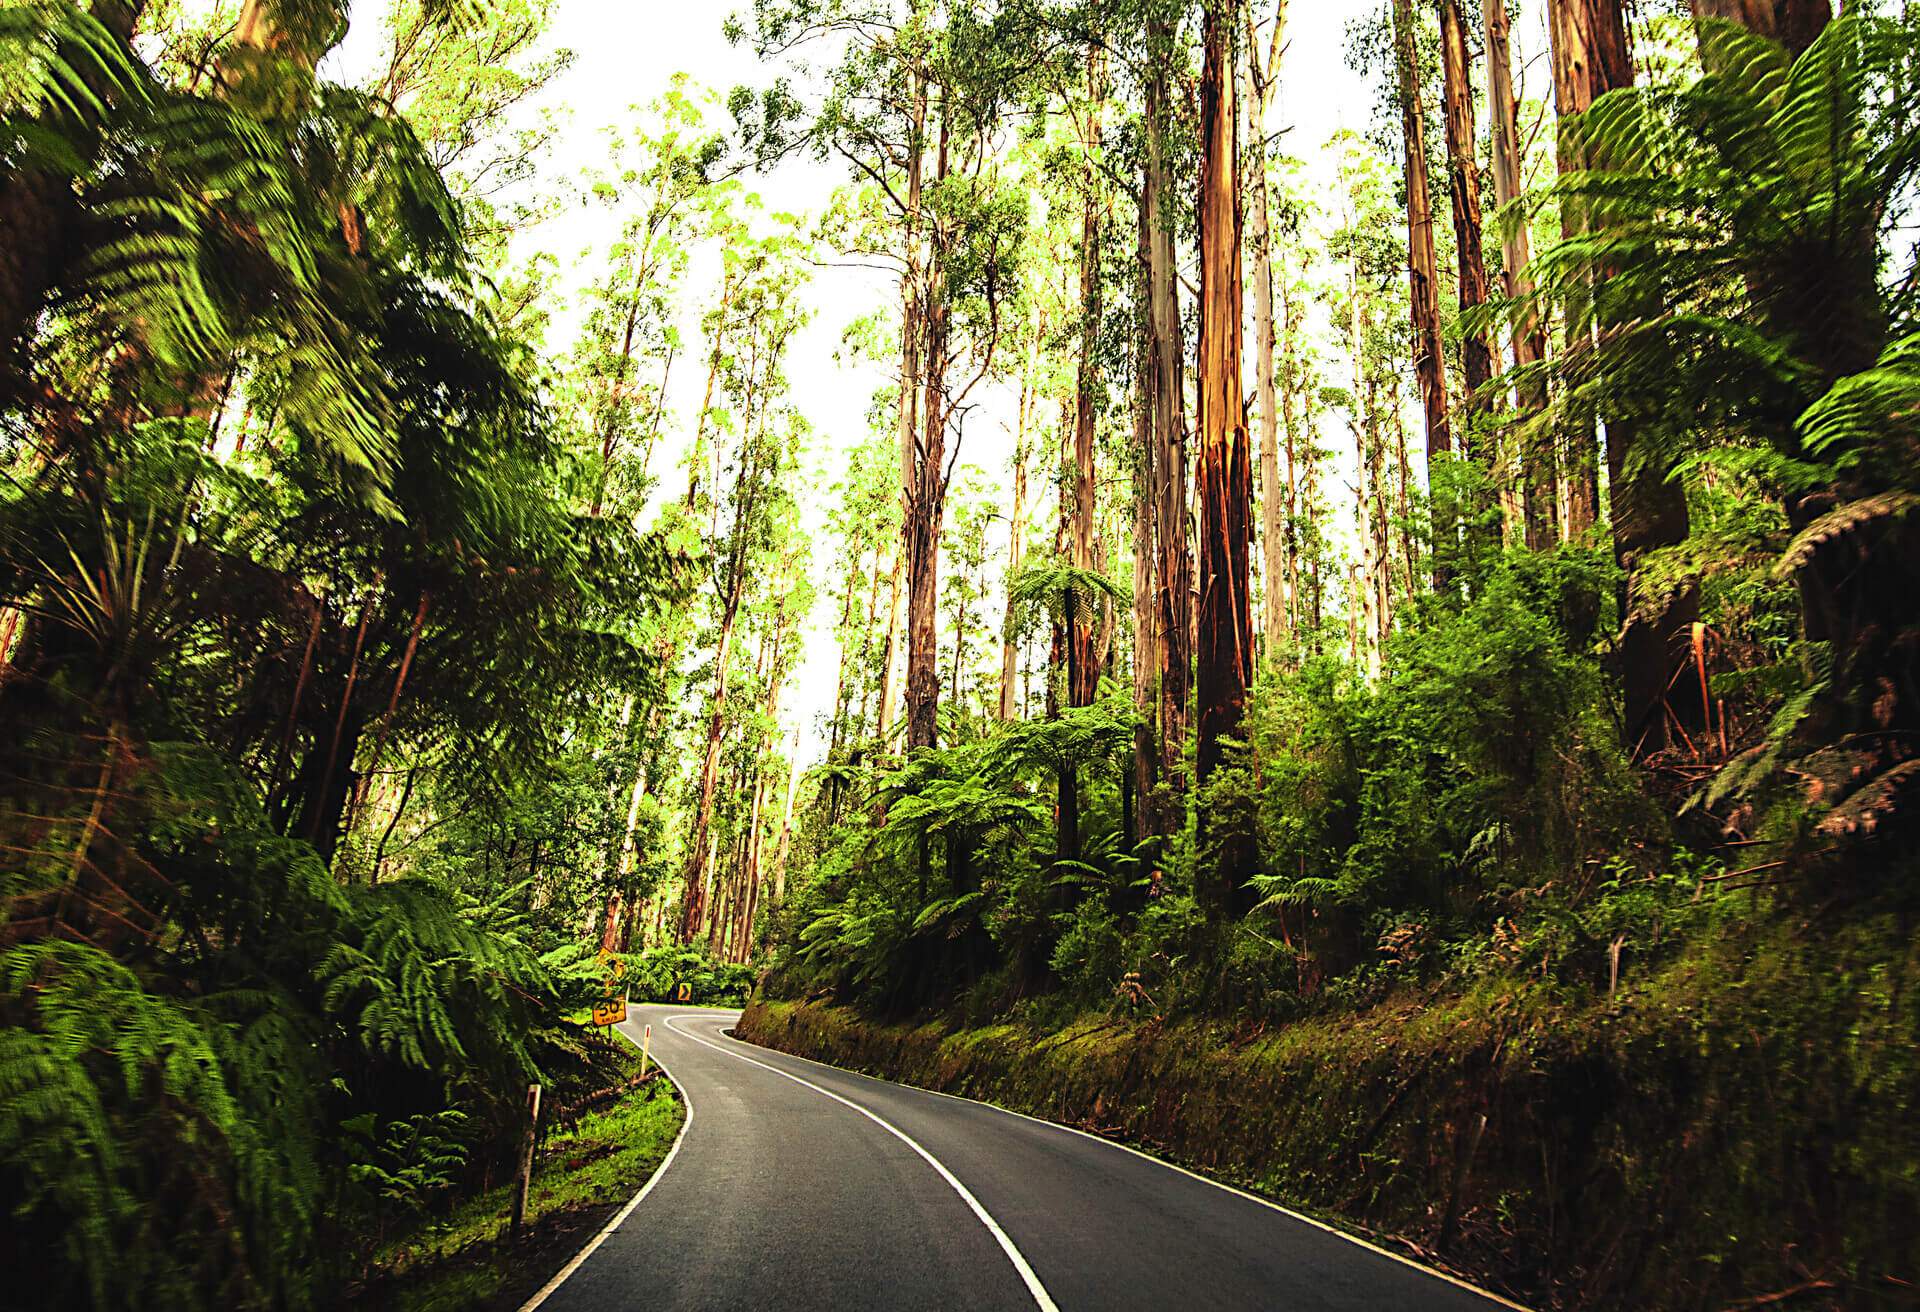 Road trip Index Australia: Victoria